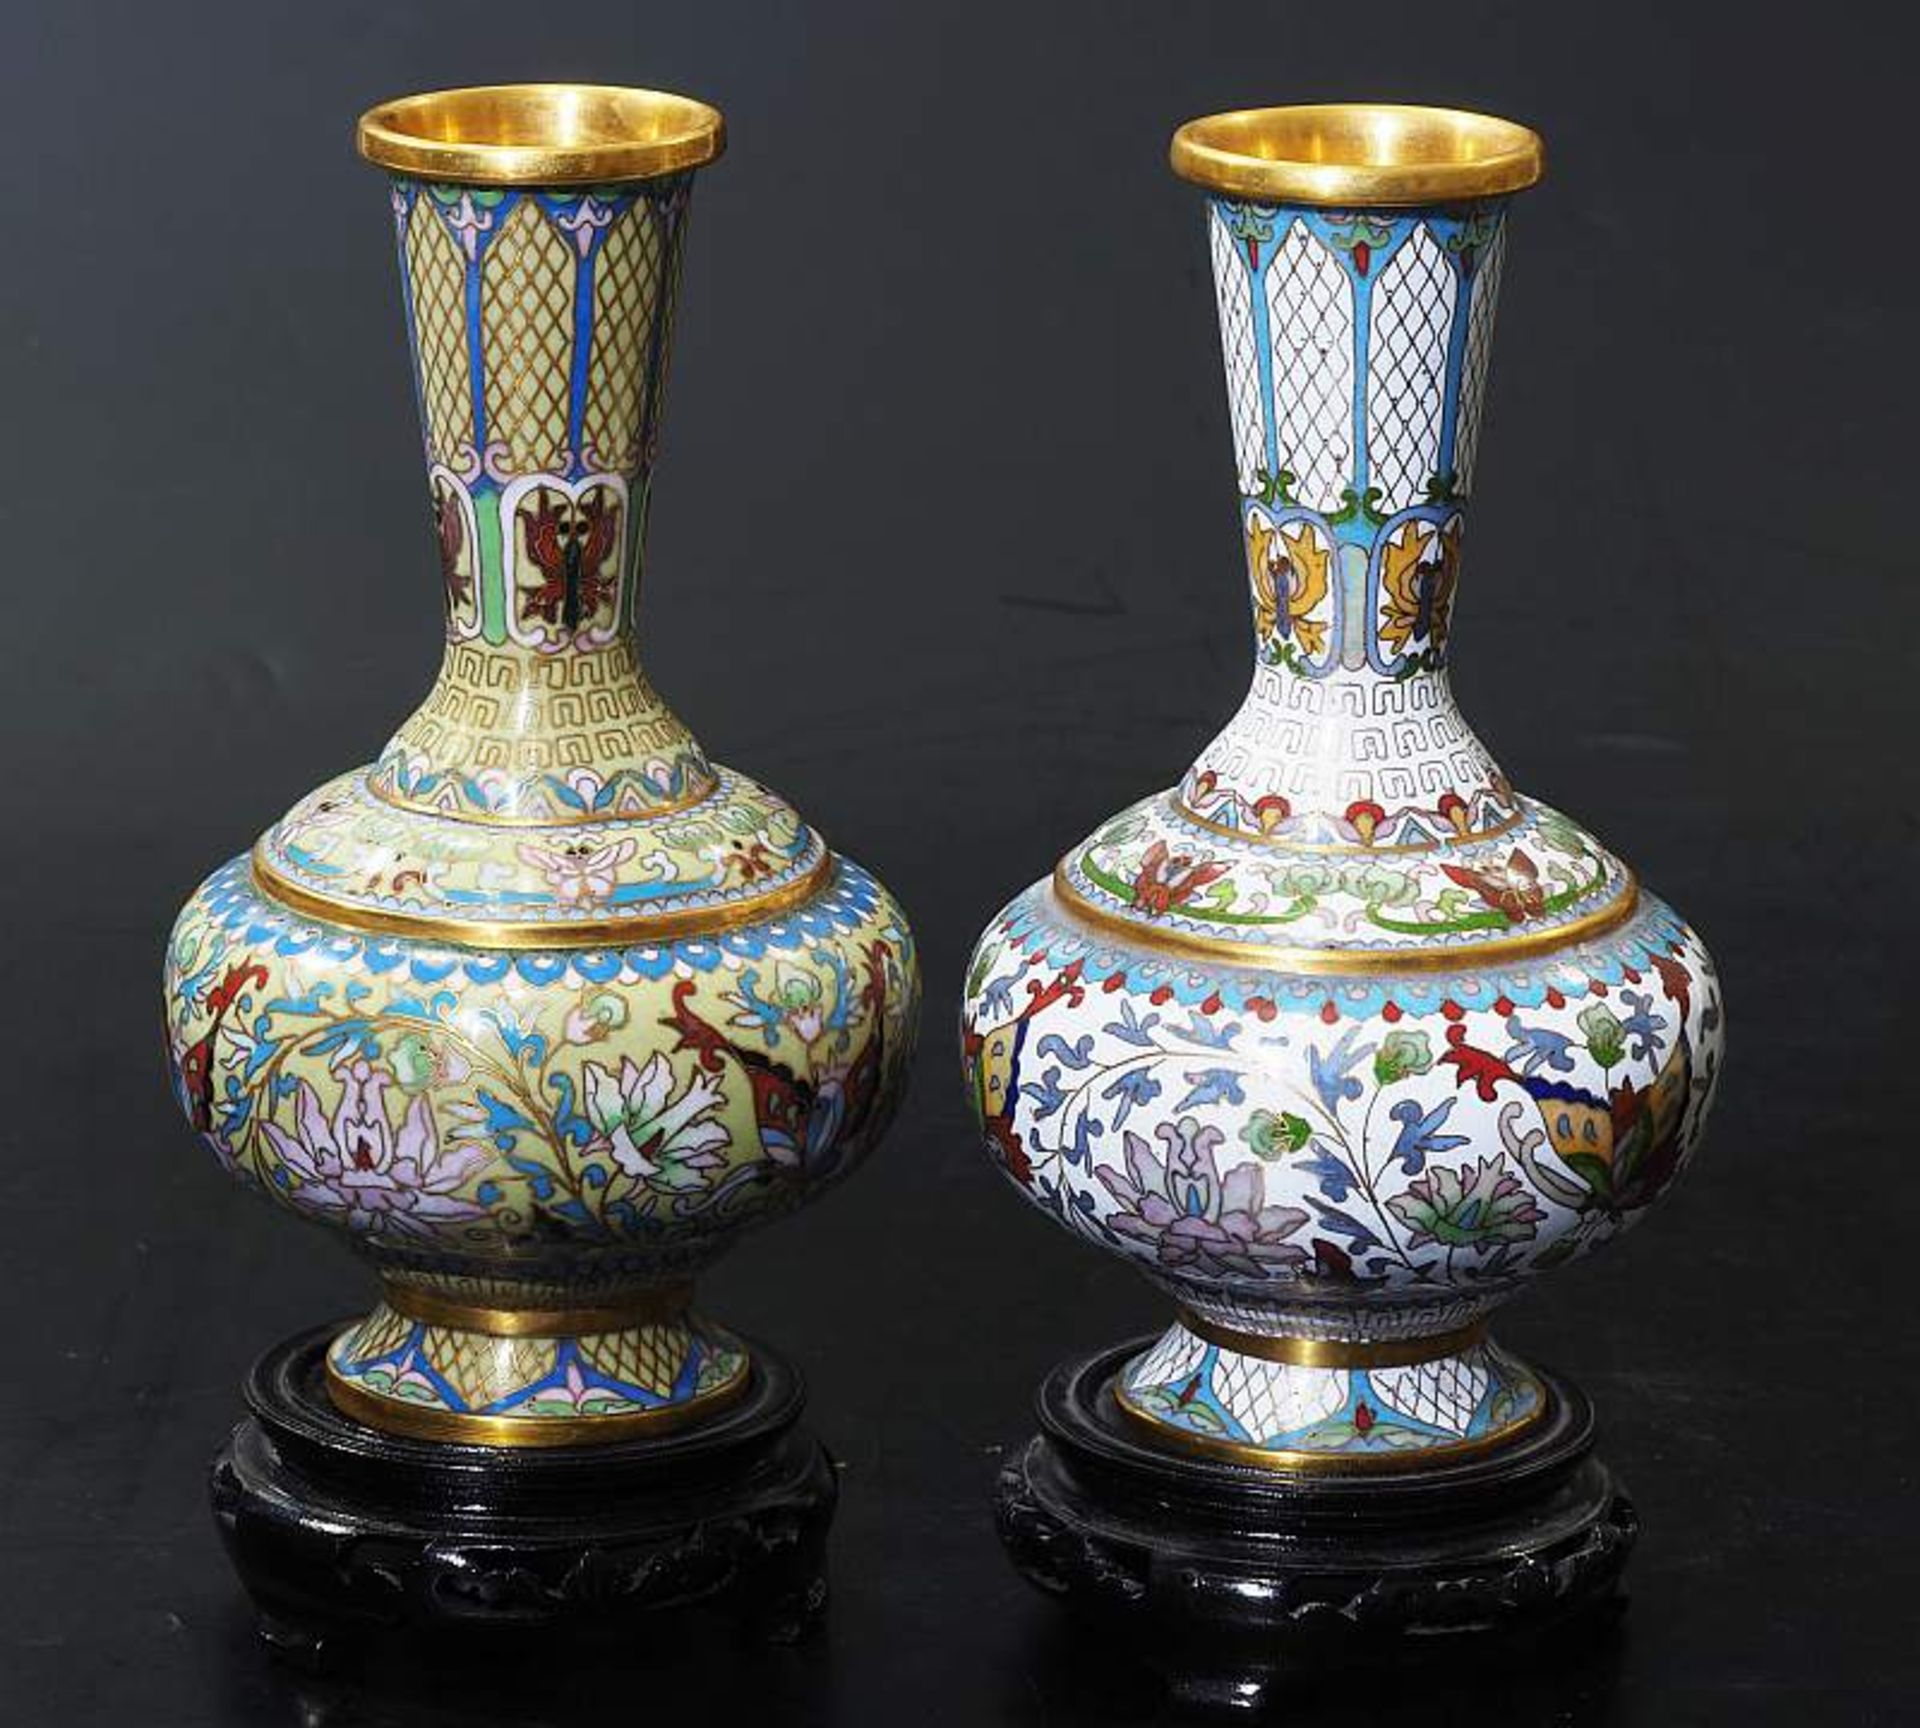 Zwei Cloisonne-Vasen auf Rosenholzsockel.Zwei Cloisonne-Vasen auf Rosenholzsockel. Messing, bauchige - Bild 3 aus 5